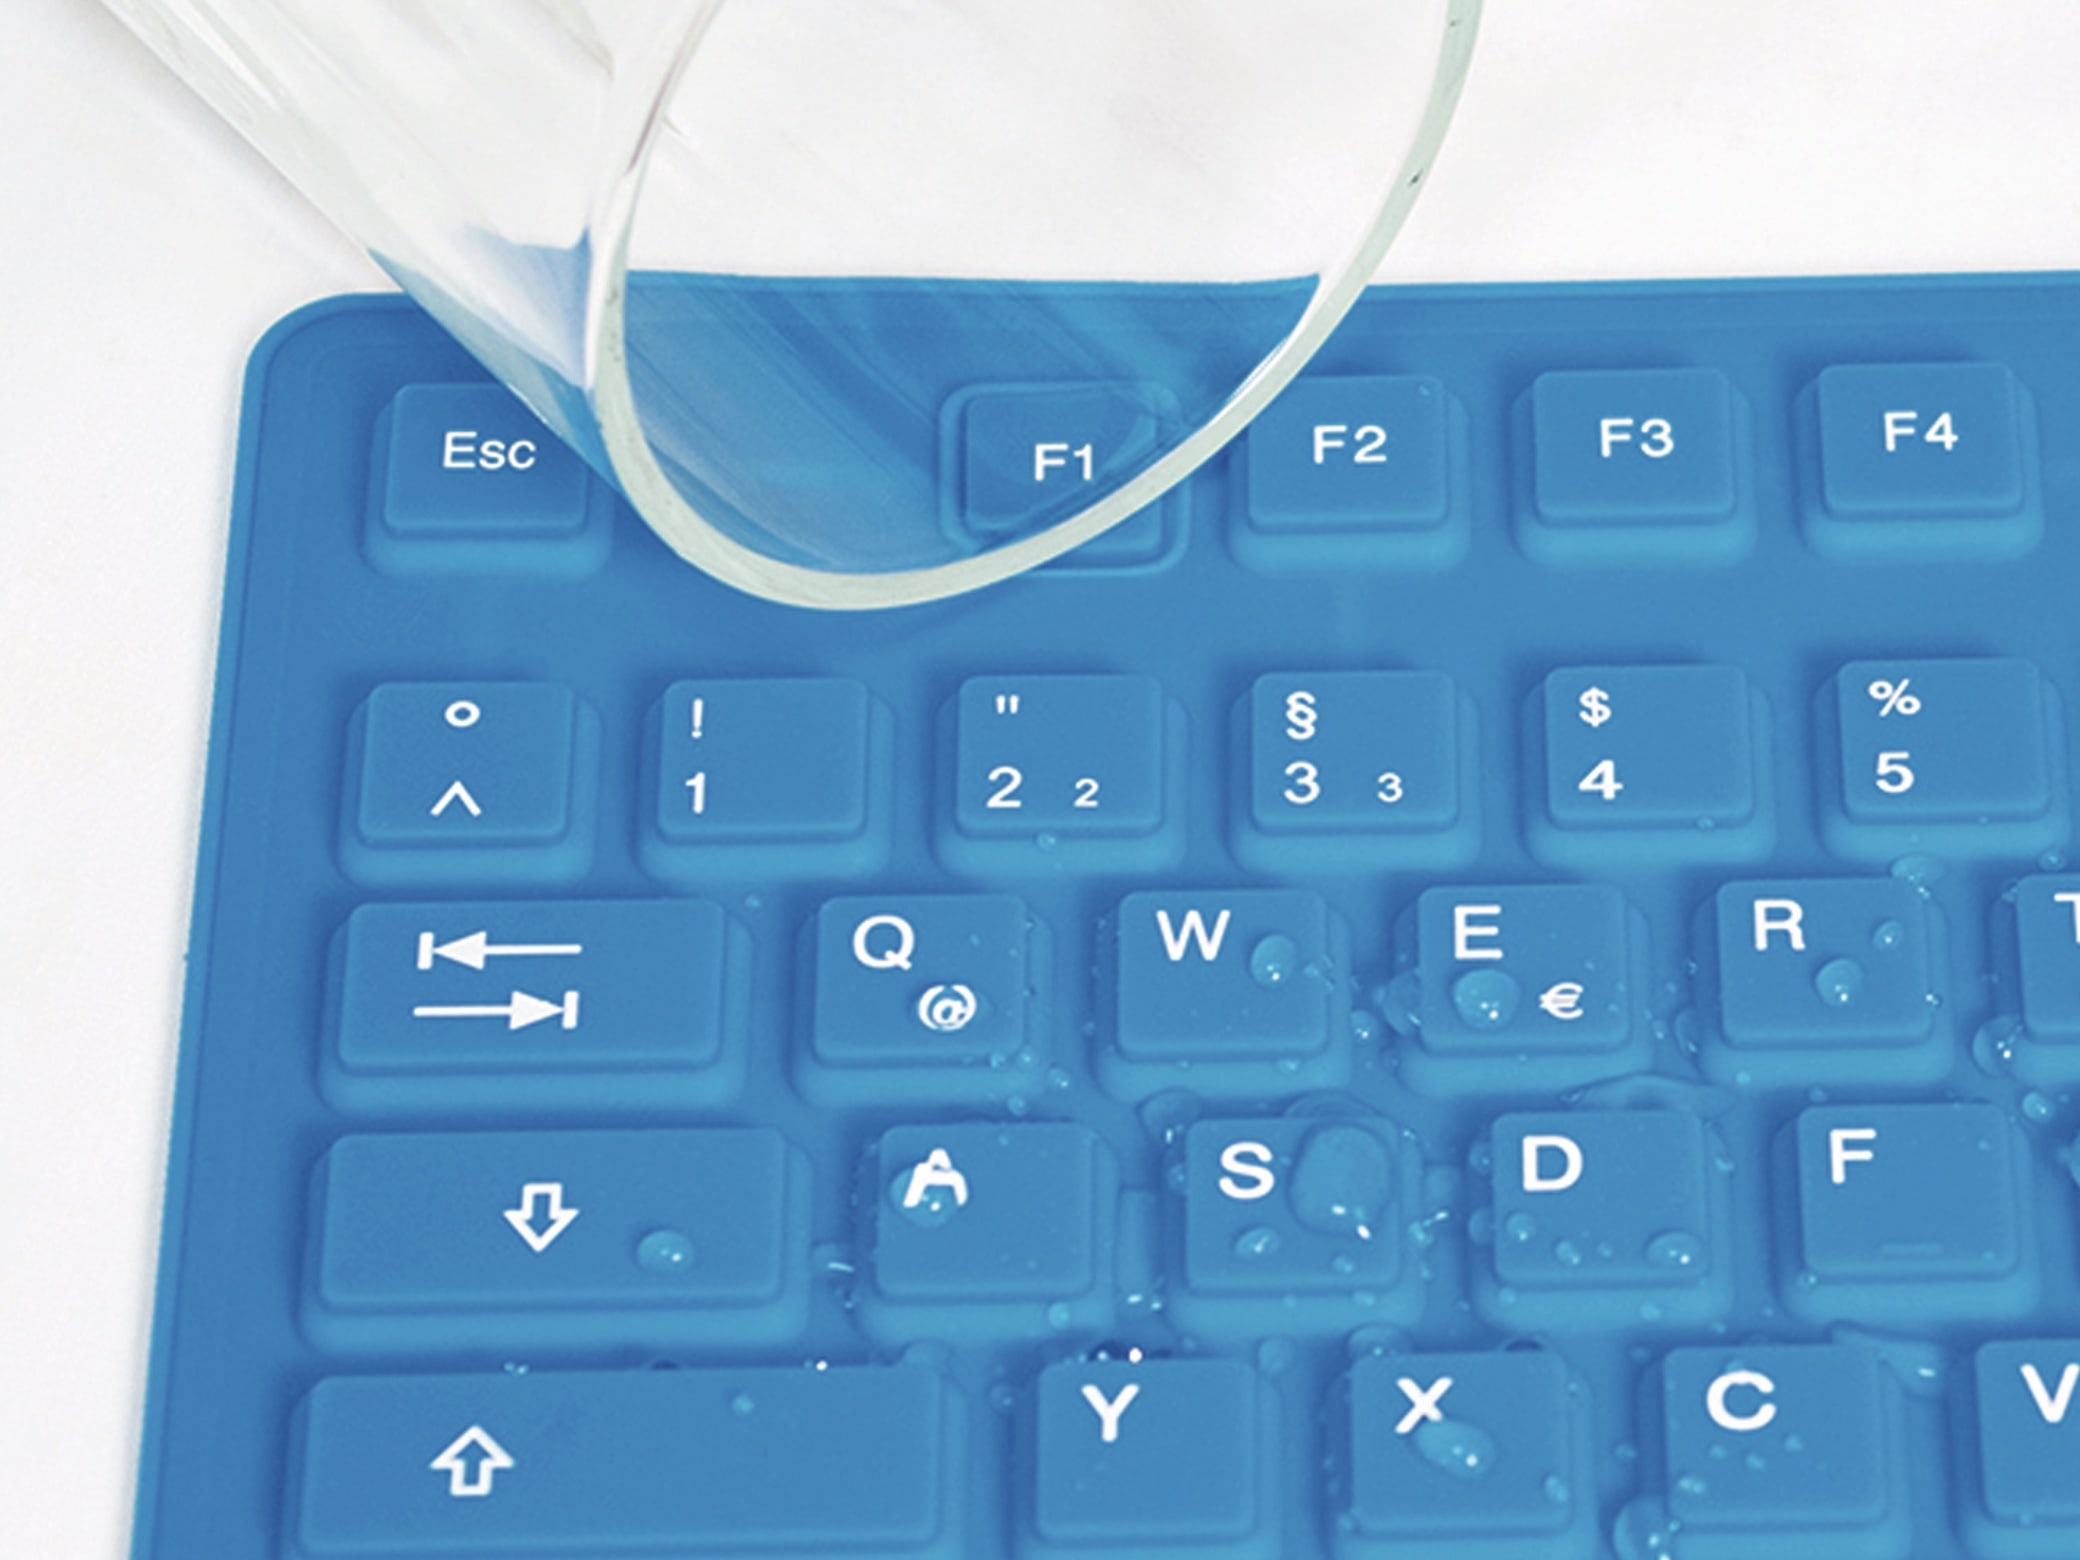 LOGILINK Tastatur ID0035A, flexibel, blau